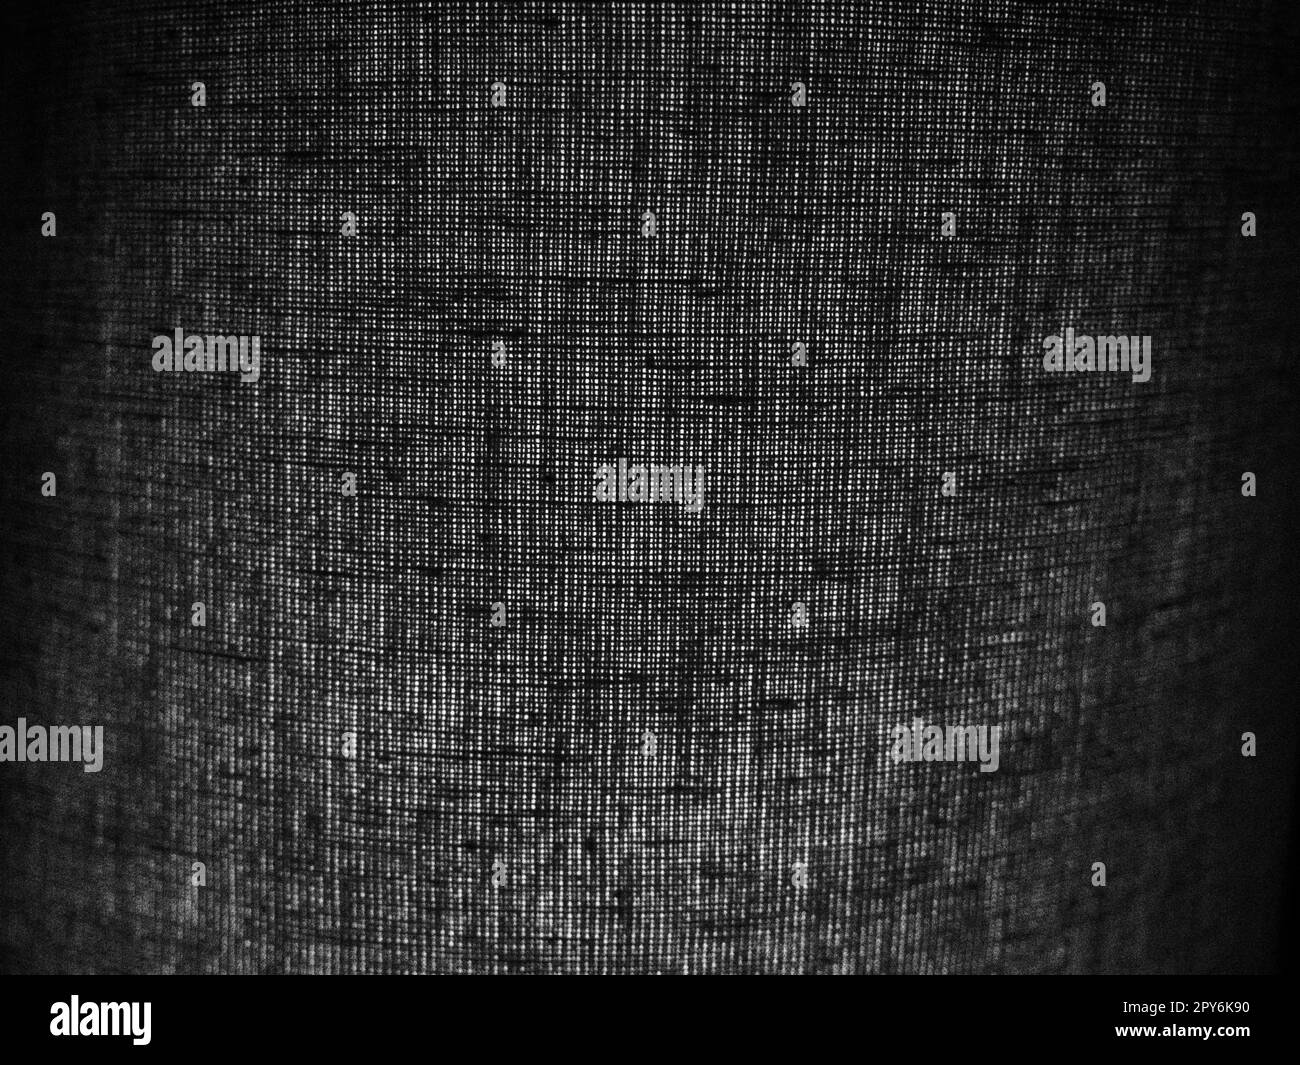 Hintergrund aus schwarzem Leinen oder Baumwollgewebe mit groben Fäden. Abstrakter Hintergrund. Ein Stück Stoff mit einer unebenen Oberfläche in dunkelgrauer Farbe. Verschachtelung von Gewinden Stockfoto